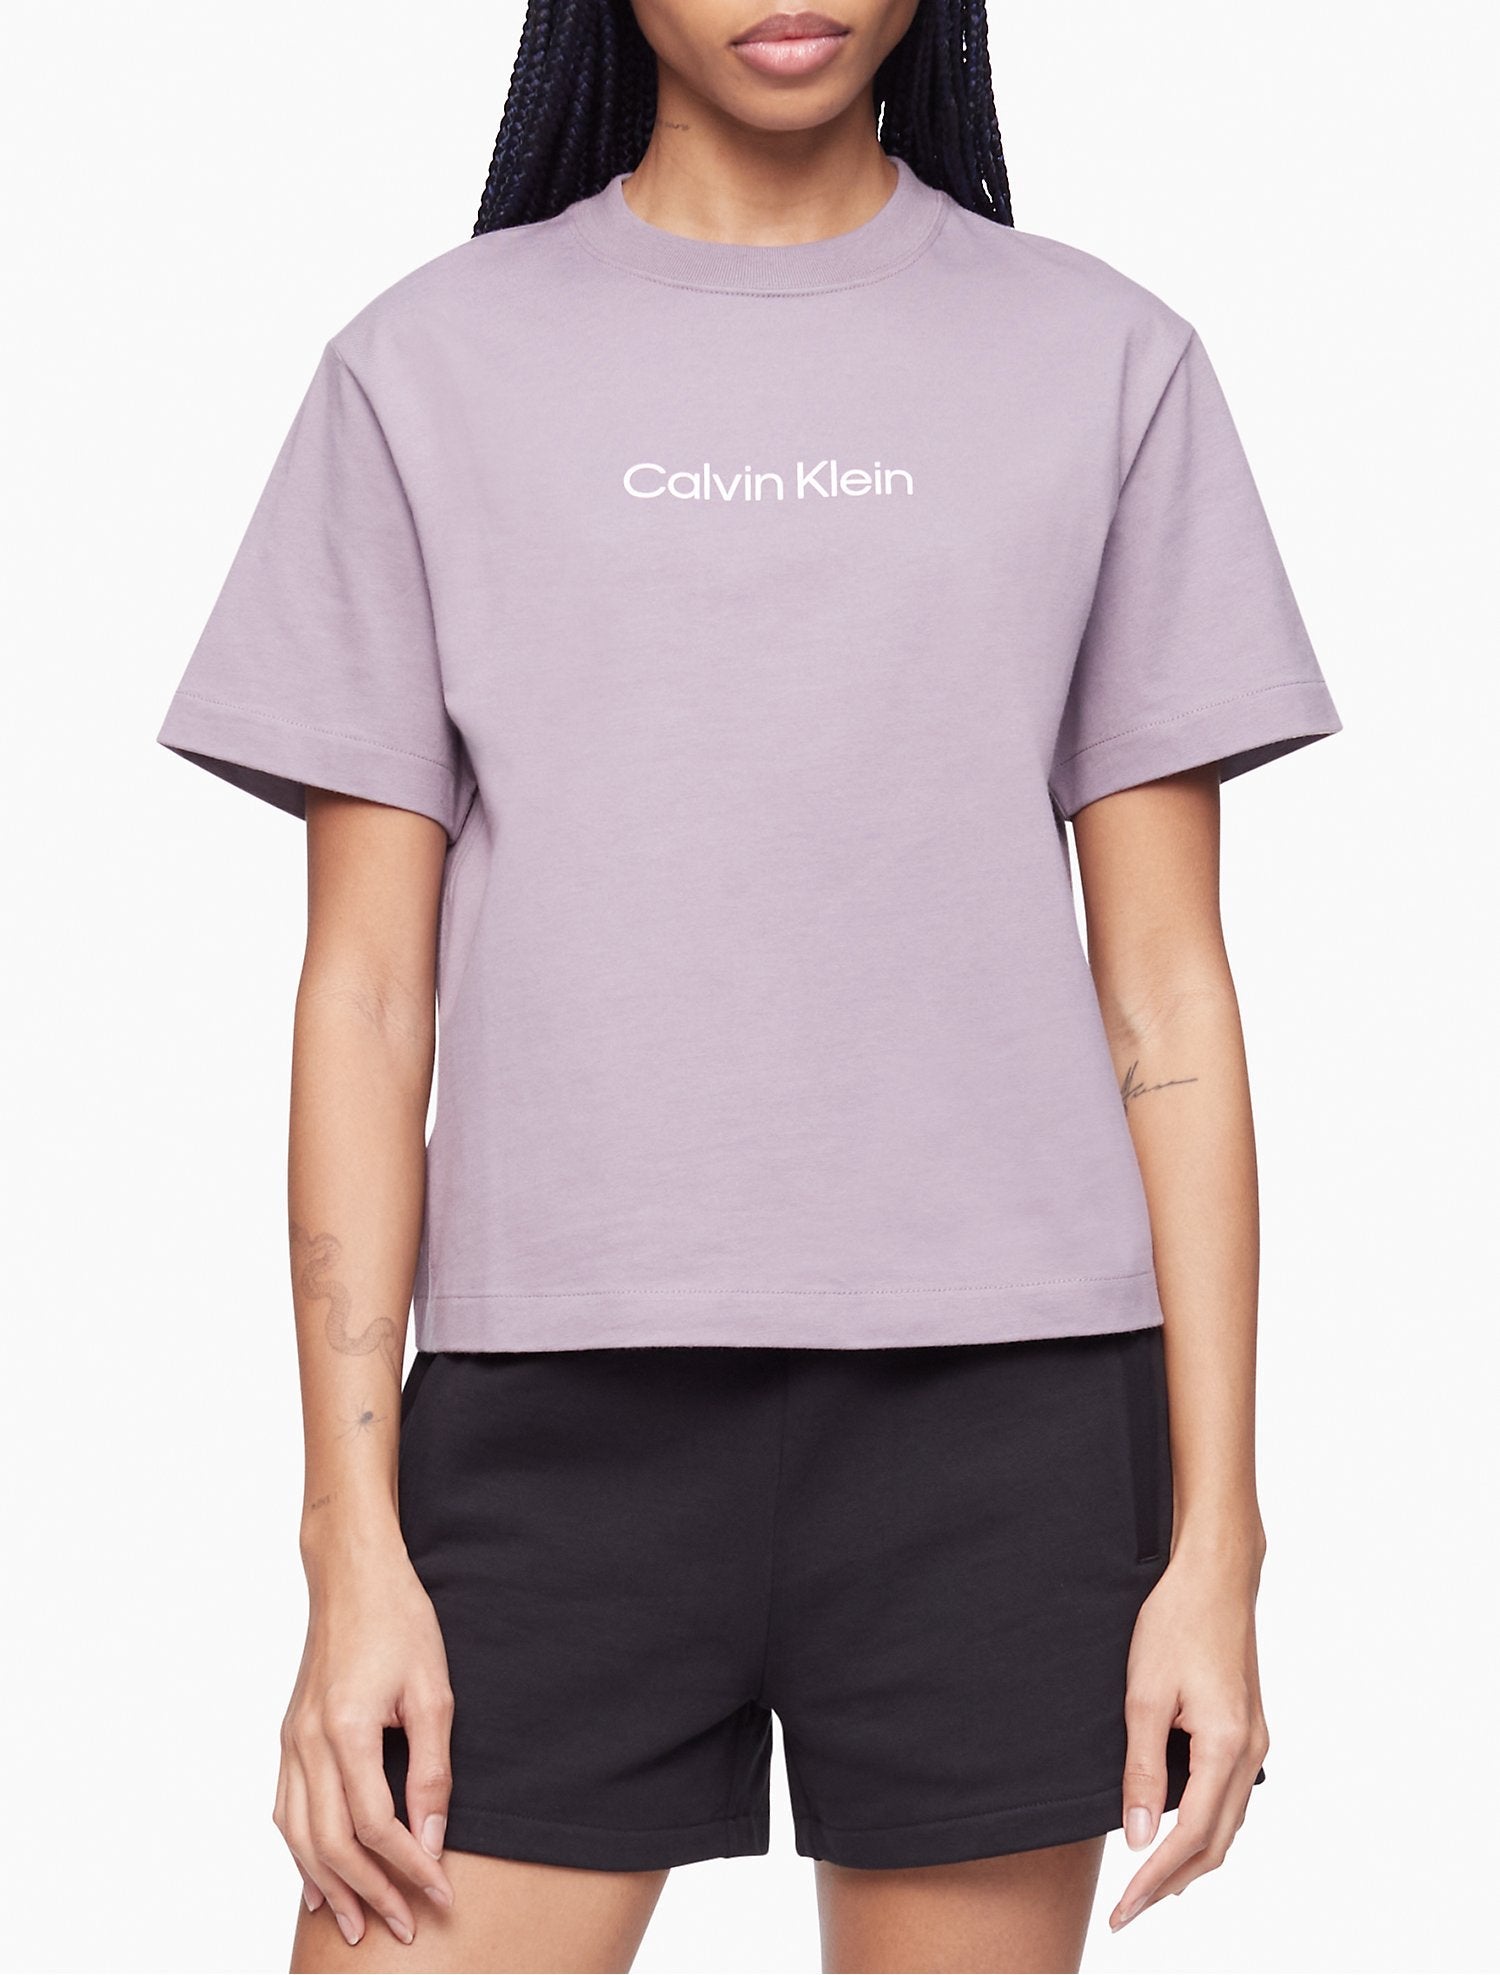 - Standard Fit T-Shirt Klein Logo Calvin Crewneck Women Relaxed